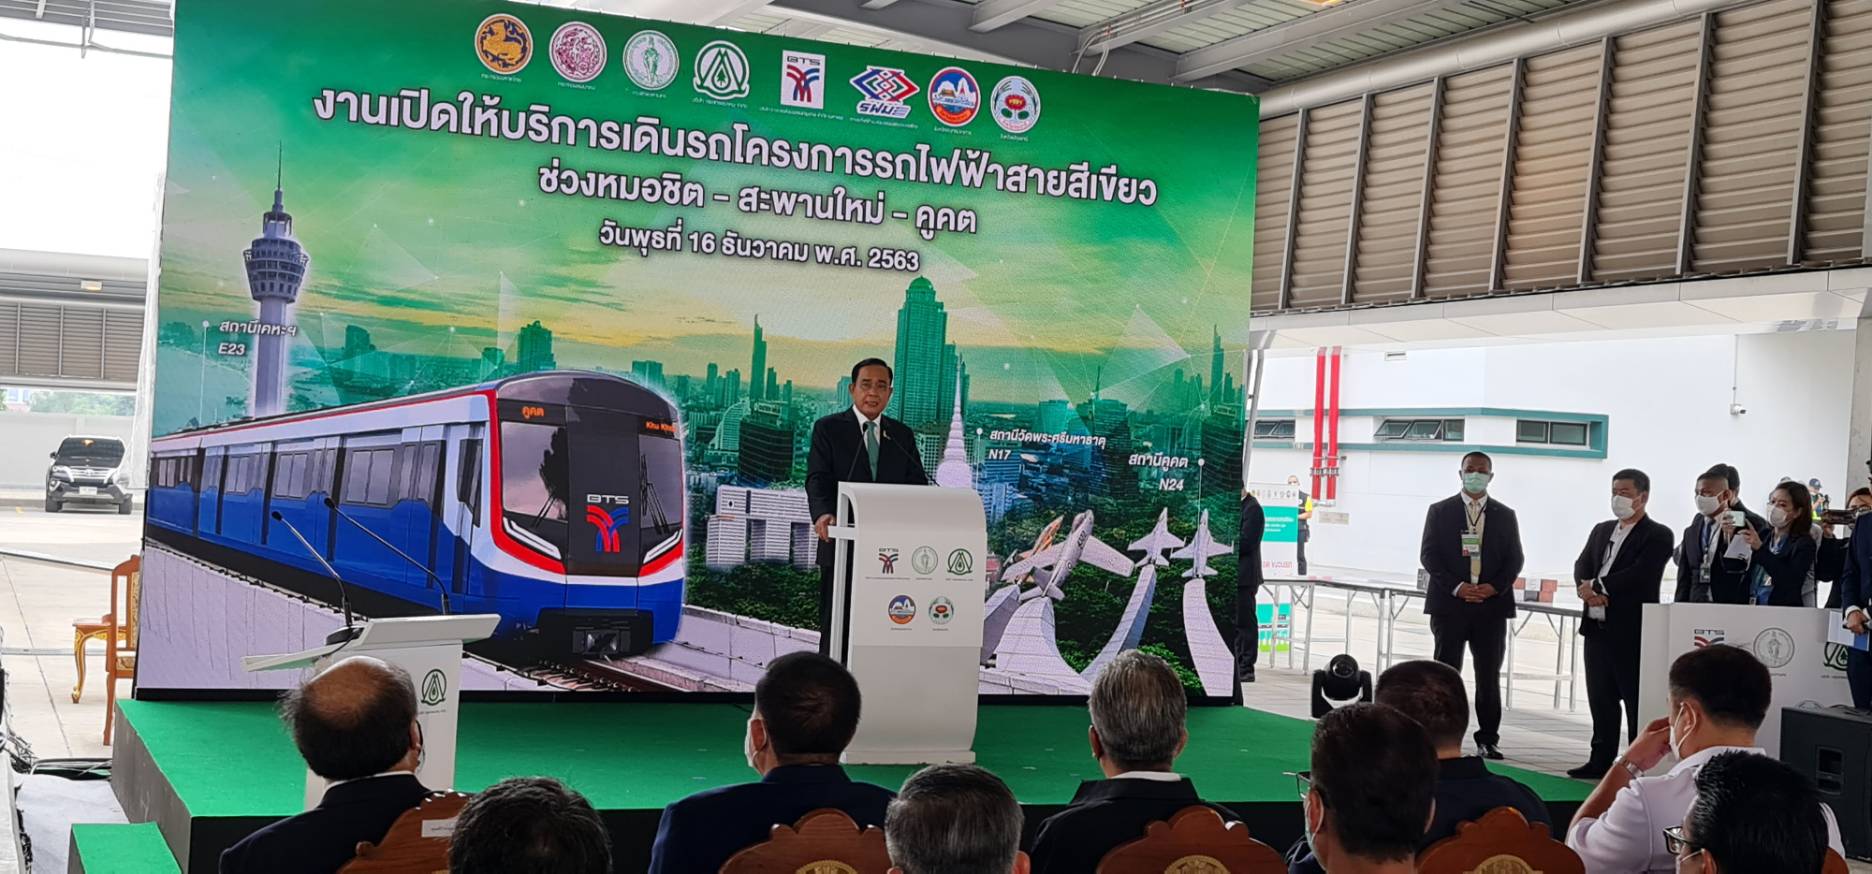 นายกรัฐมนตรี เป็นประธานในพิธีเปิดให้บริการเดินรถ โครงการรถไฟฟ้าสายสีเขียว